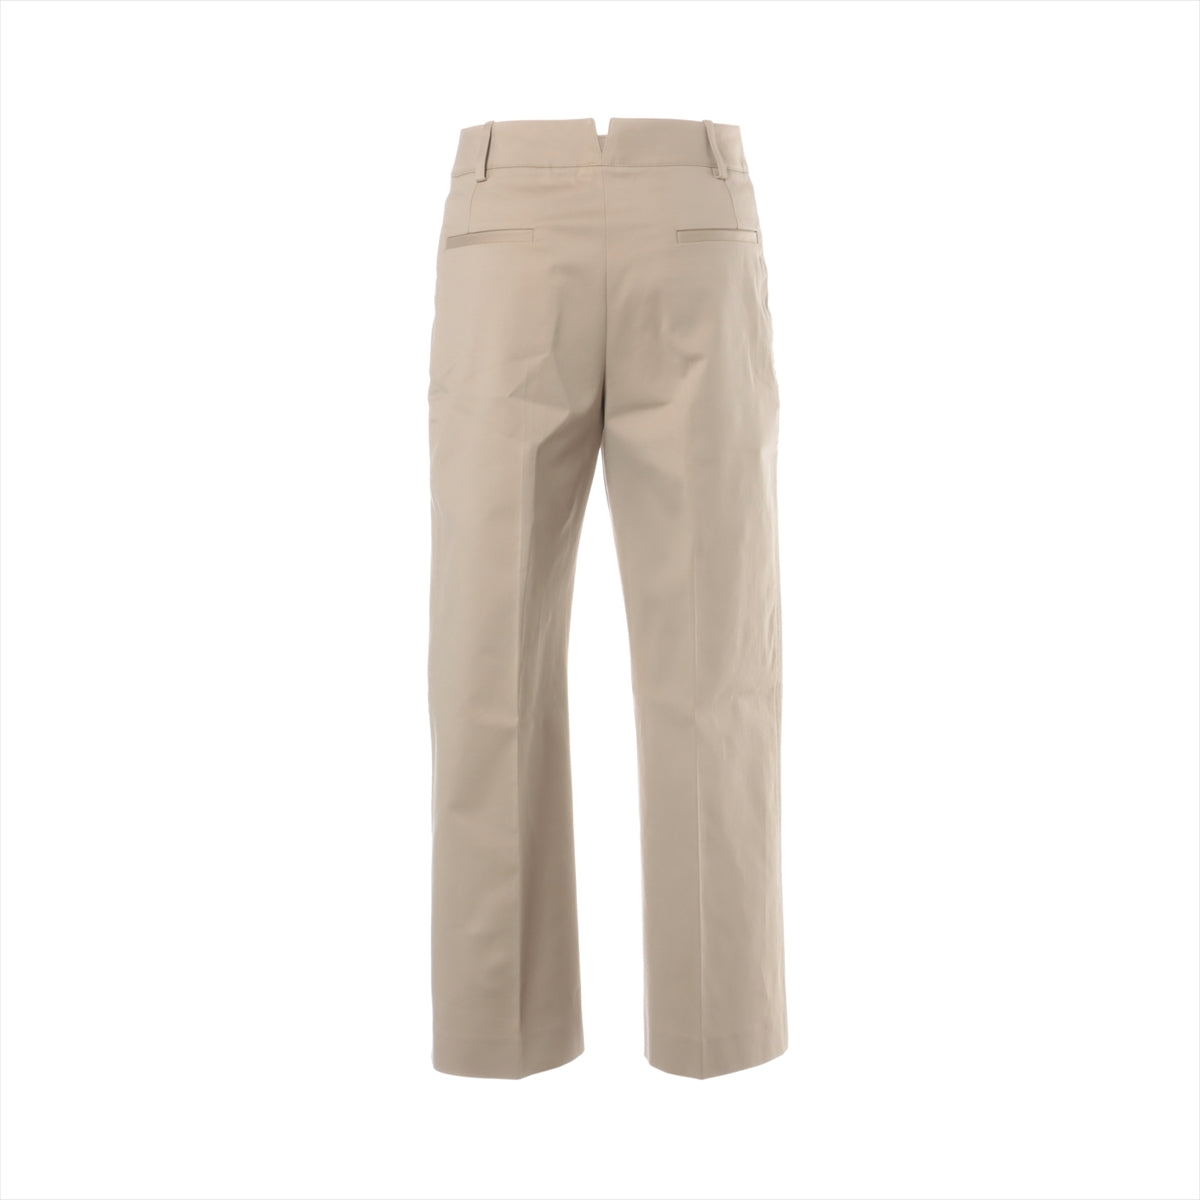 Hermès Cotton & polyurethane Pants 34 Ladies' Beige  16-7403 Wide pants